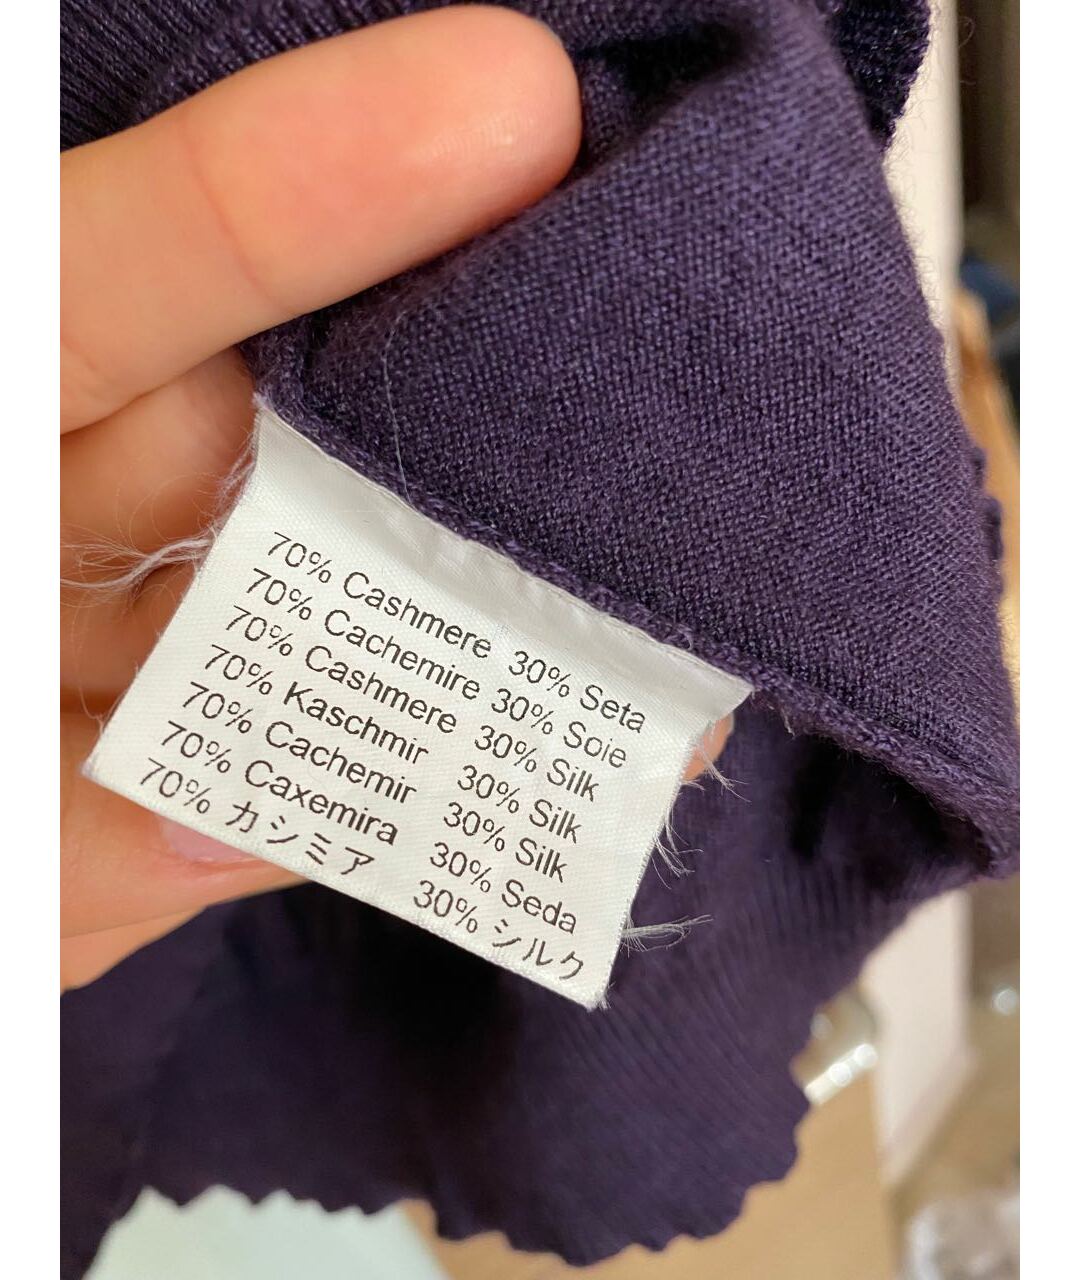 VALENTINO Фиолетовый кашемировый джемпер / свитер, фото 3